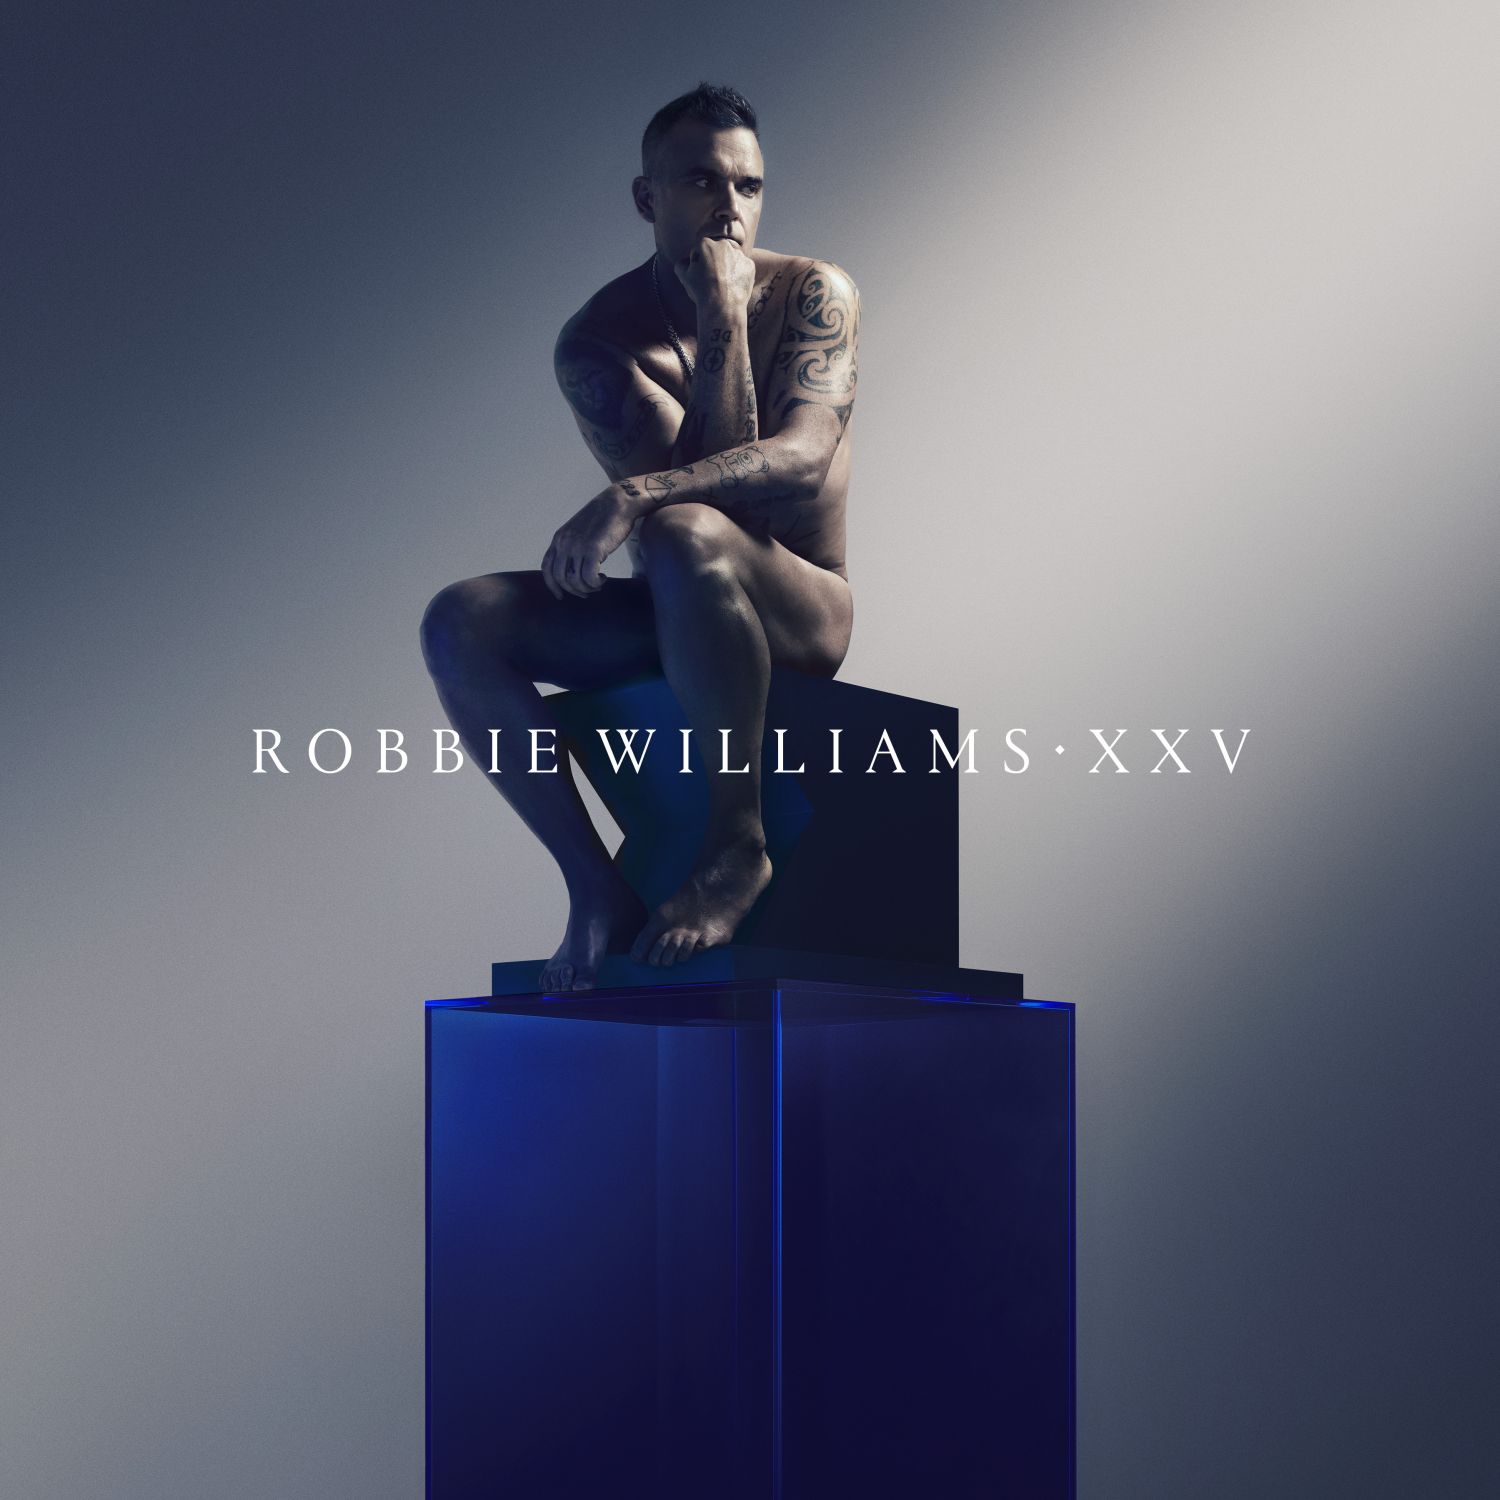 Robbie Williams festeggia i 25 anni di carriera con un album di hit ri-registrate con la Metropole Orkest